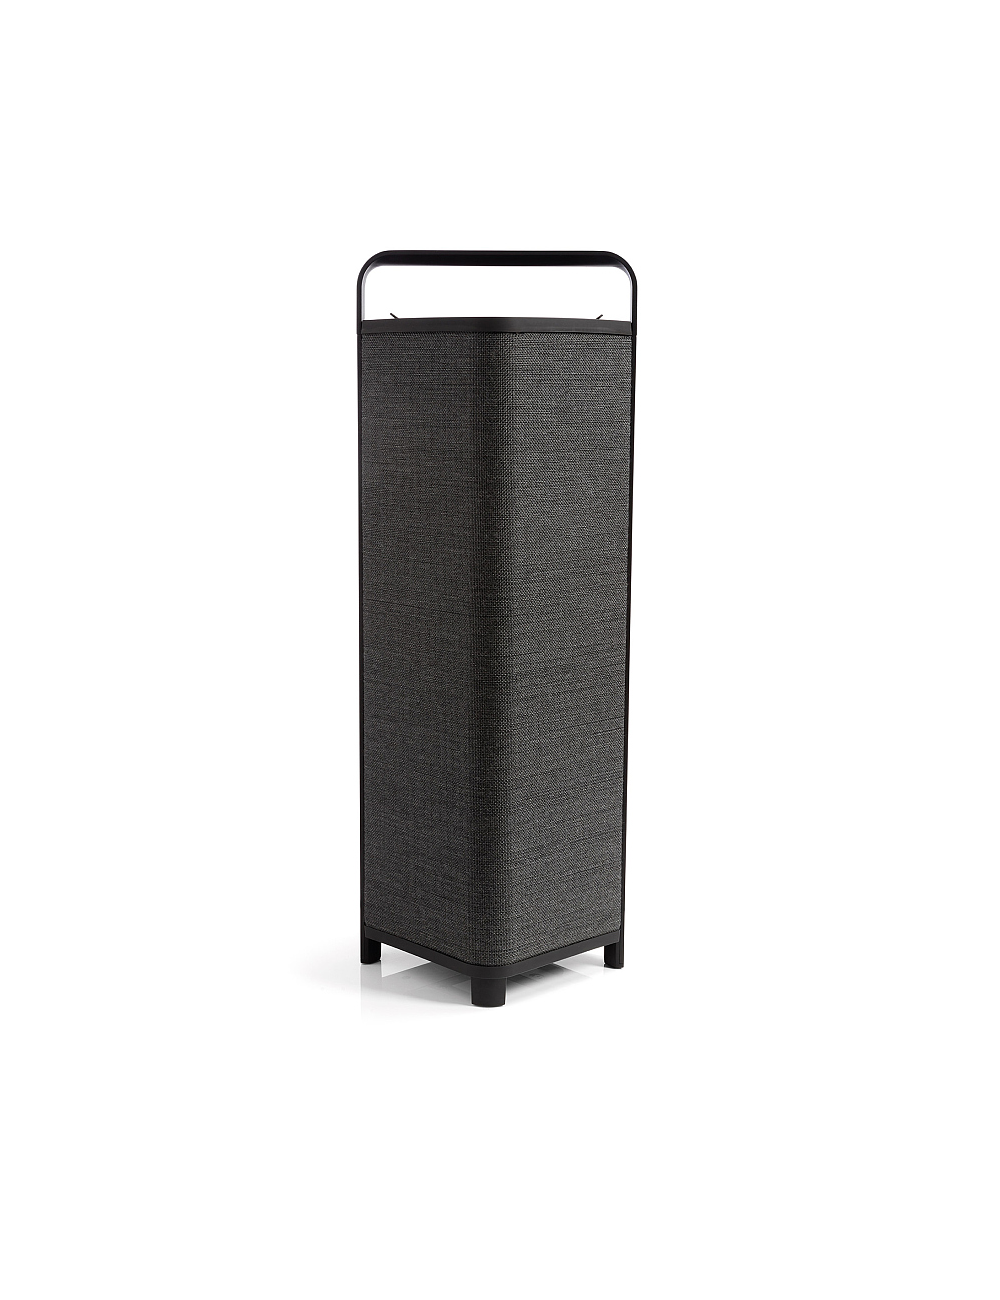 ESCAPE P9 portable speaker